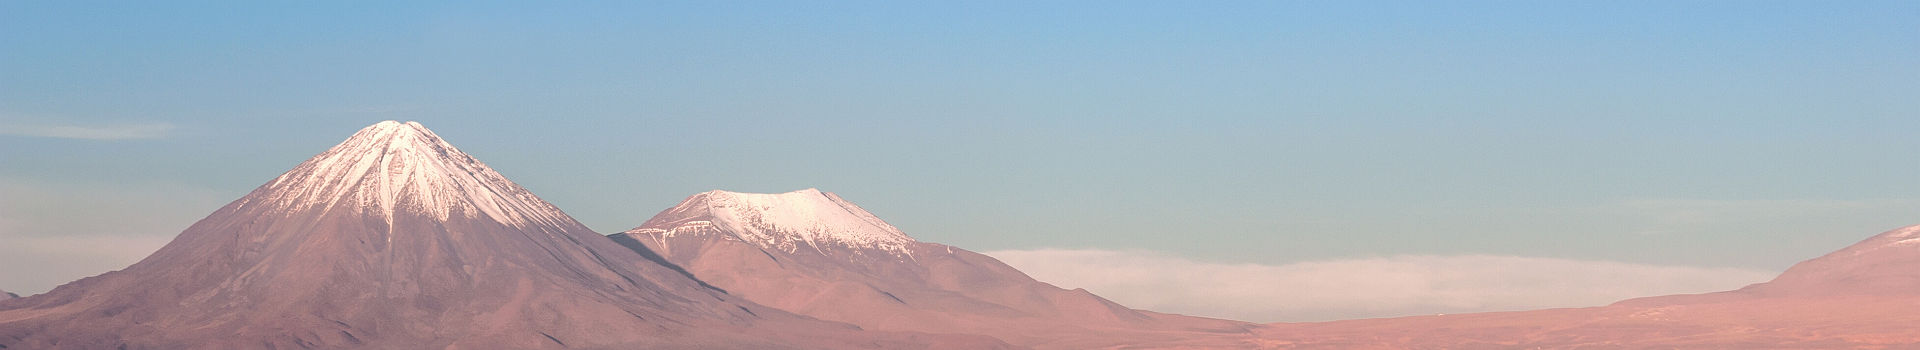 Les volcans Licancabur et Juriques, vallée de la lune, désert d'Atacama - Chili